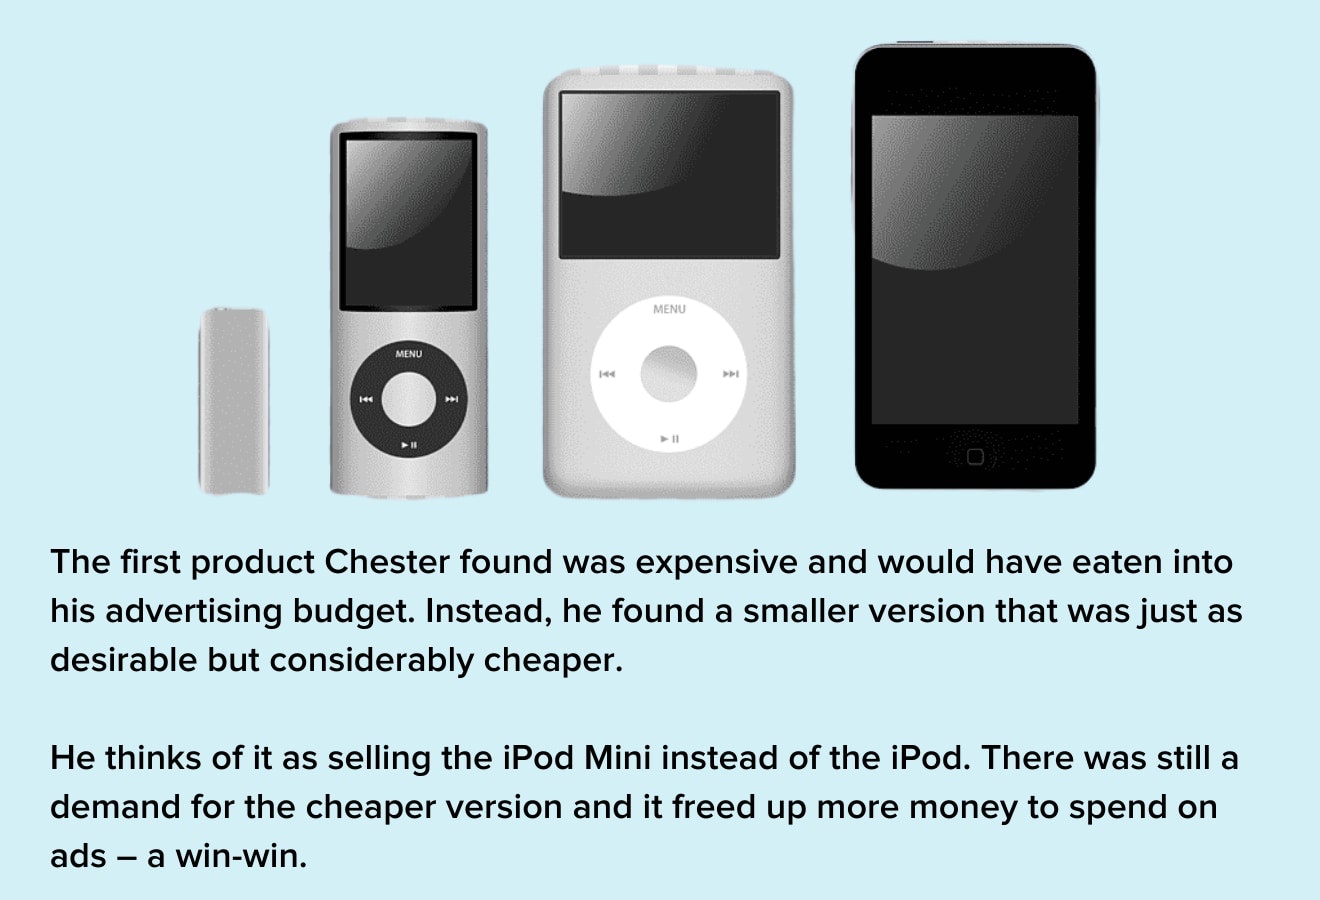 切斯特将其产品解释为“ipod mini”而不是更高级的'ipod'